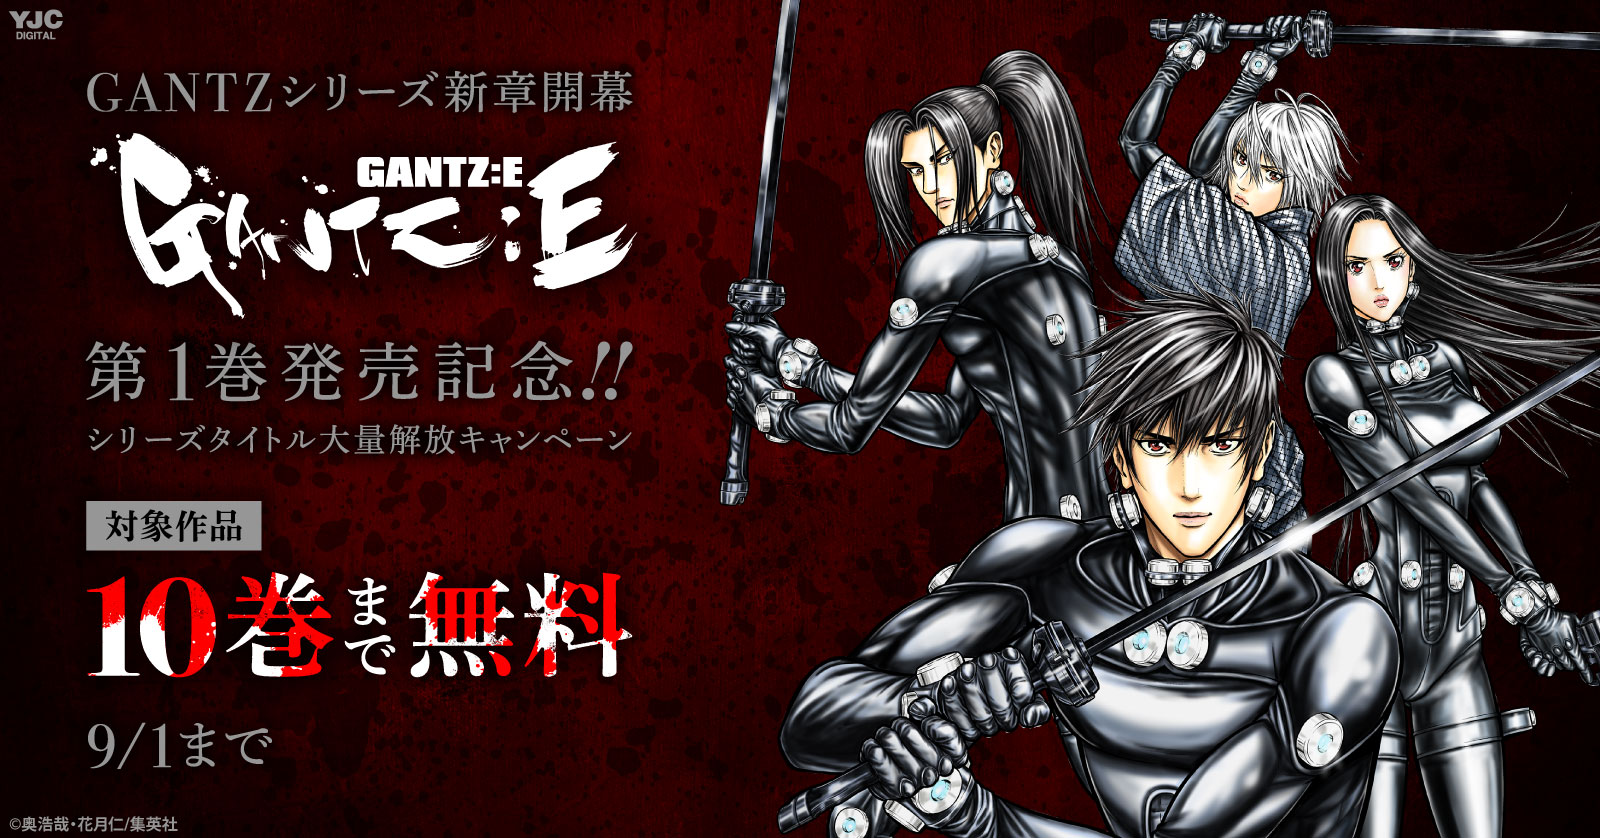 Gantzシリーズ新章開幕 Gantz E 第１巻発売記念 シリーズタイトル大量解放キャンペーン 漫画全巻ドットコム